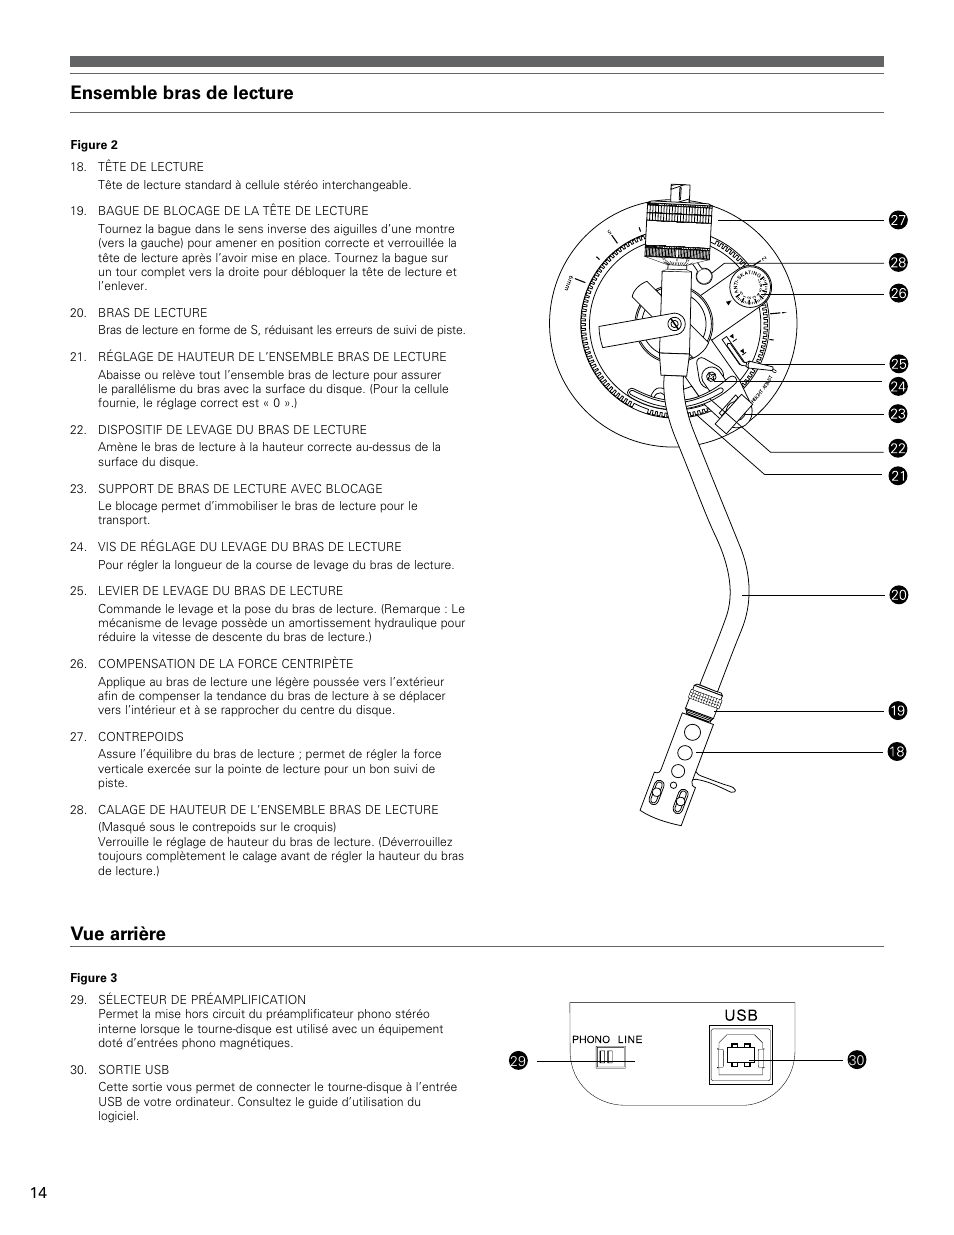 Ensemble bras de lecture, Vue arrière | Audio-Technica AT-LP120-USB User  Manual | Page 14 / 32 | Original mode